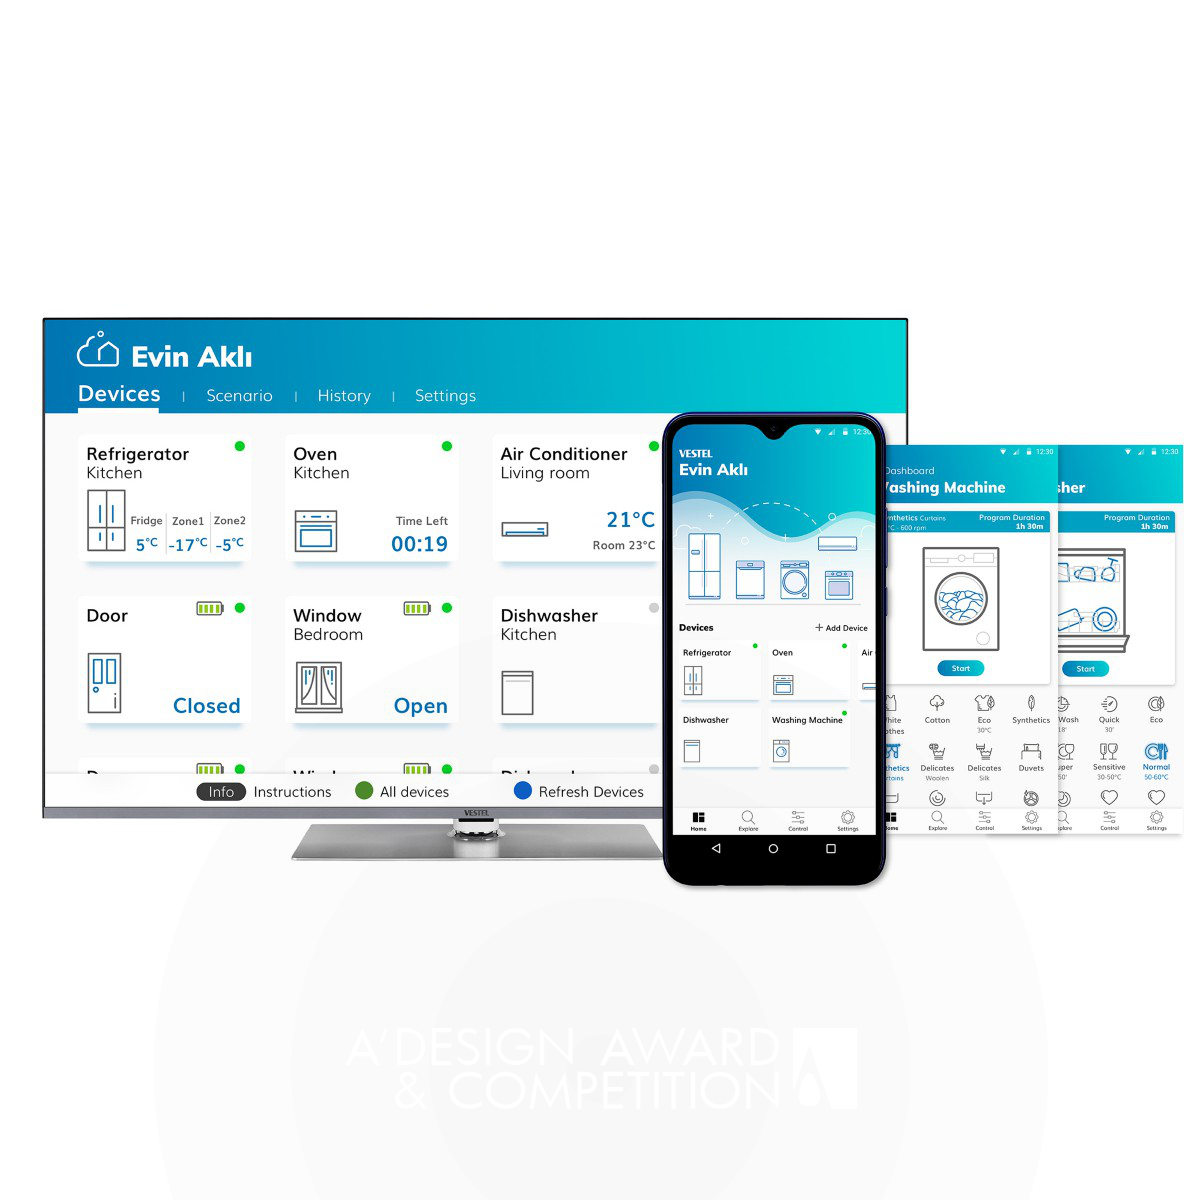 Vestel Evin Akli Smart Home Mobile Application by Vestel UX UI Design Group